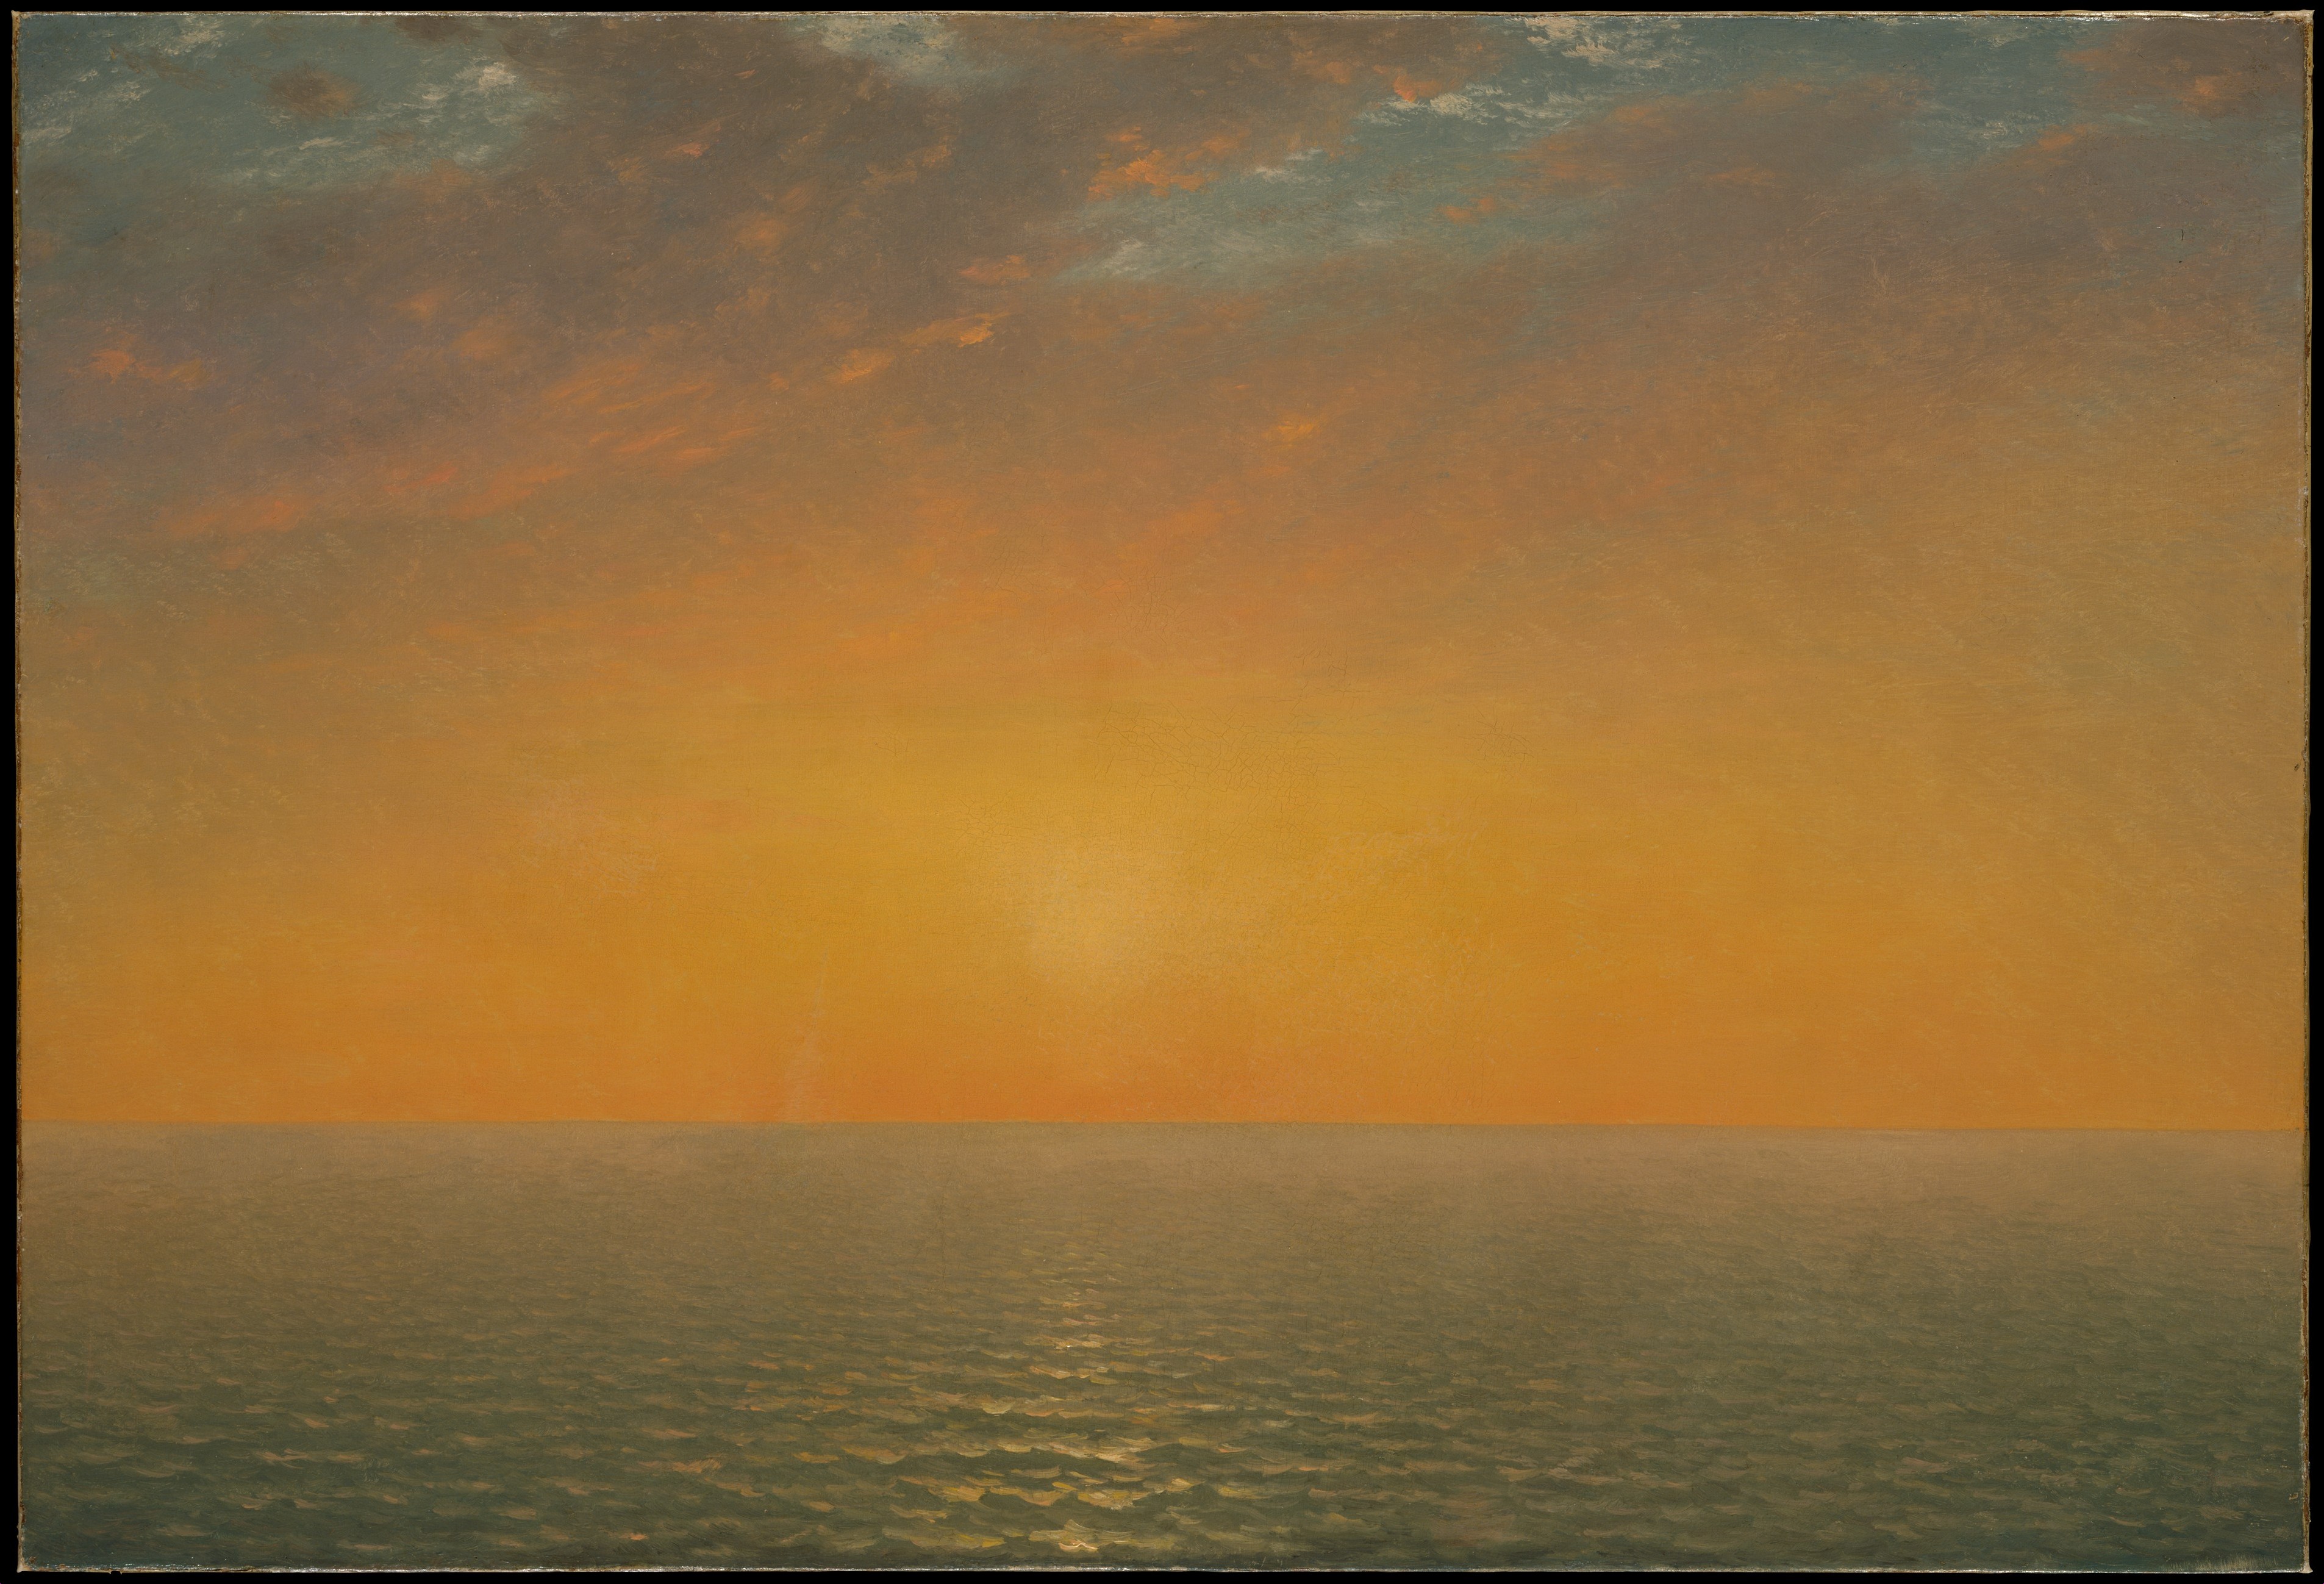 Sunset on the Sea by John Frederick Kensett - 1872 - 71.1 x 104.5 cm Metropolitan Museum of Art